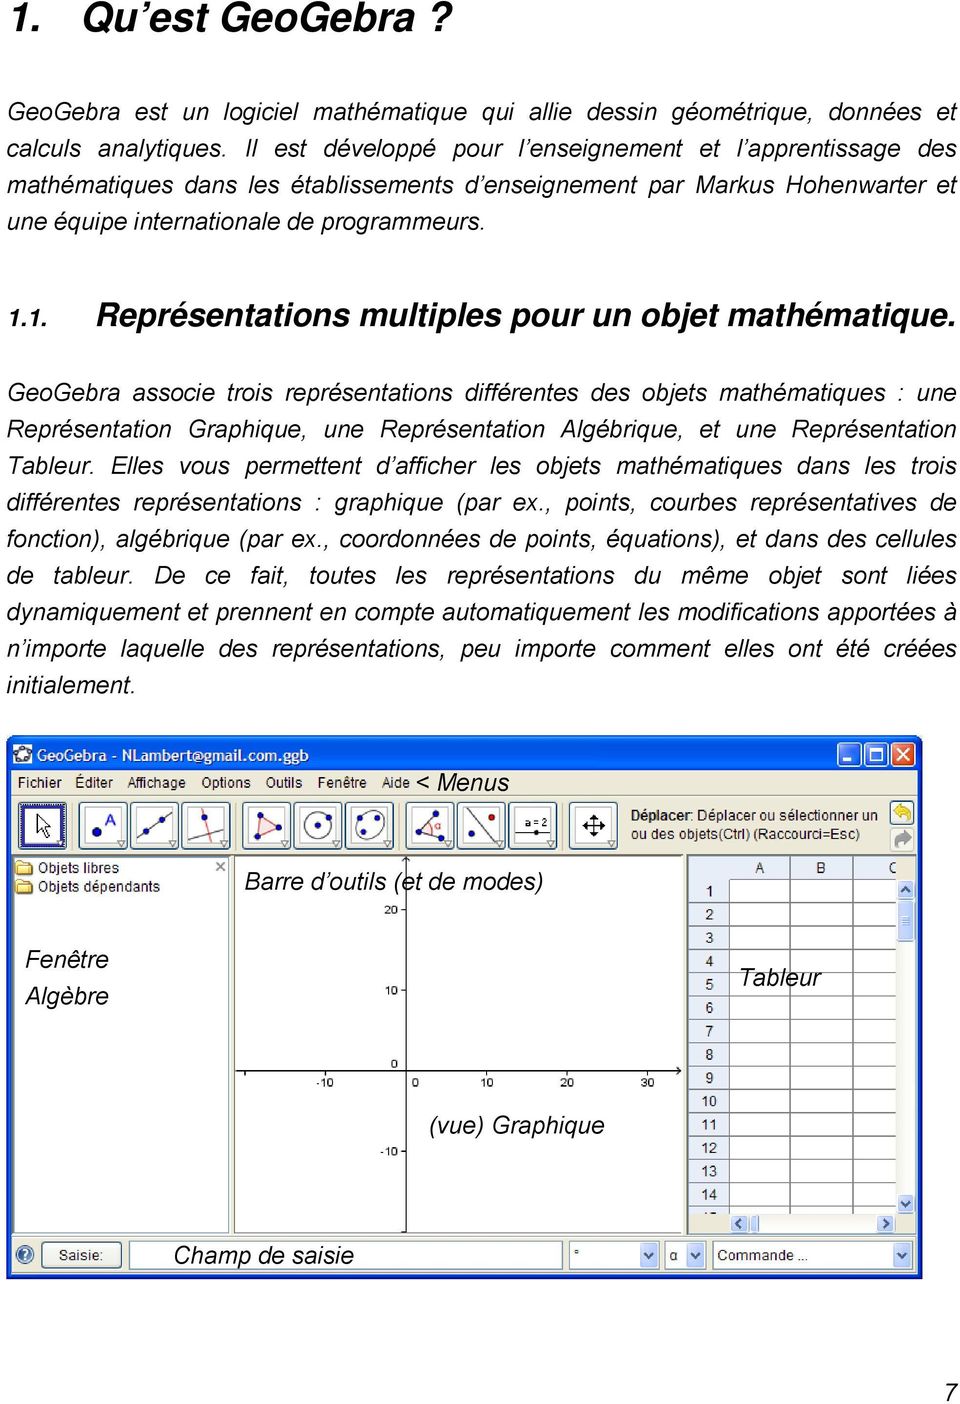 1. Représentations multiples pour un objet mathématique.